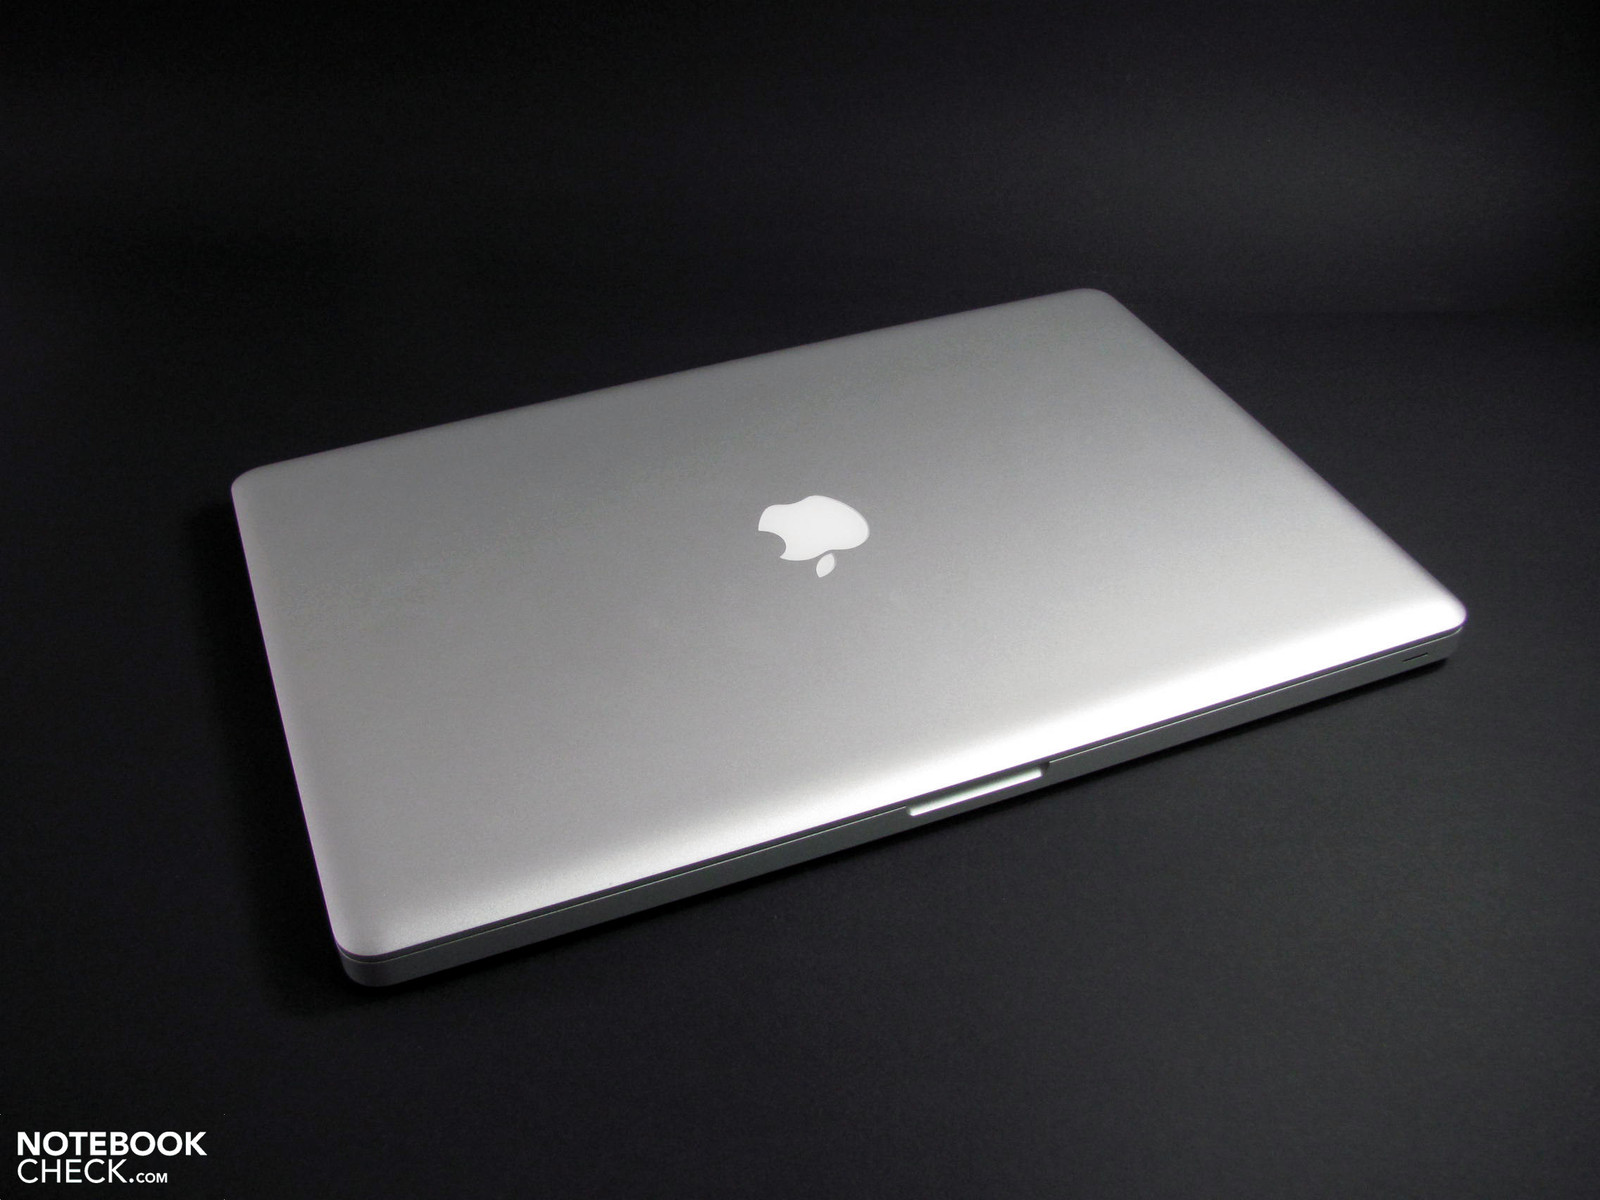 Apple early 2011 macbook pro specs pelican case macbook 13